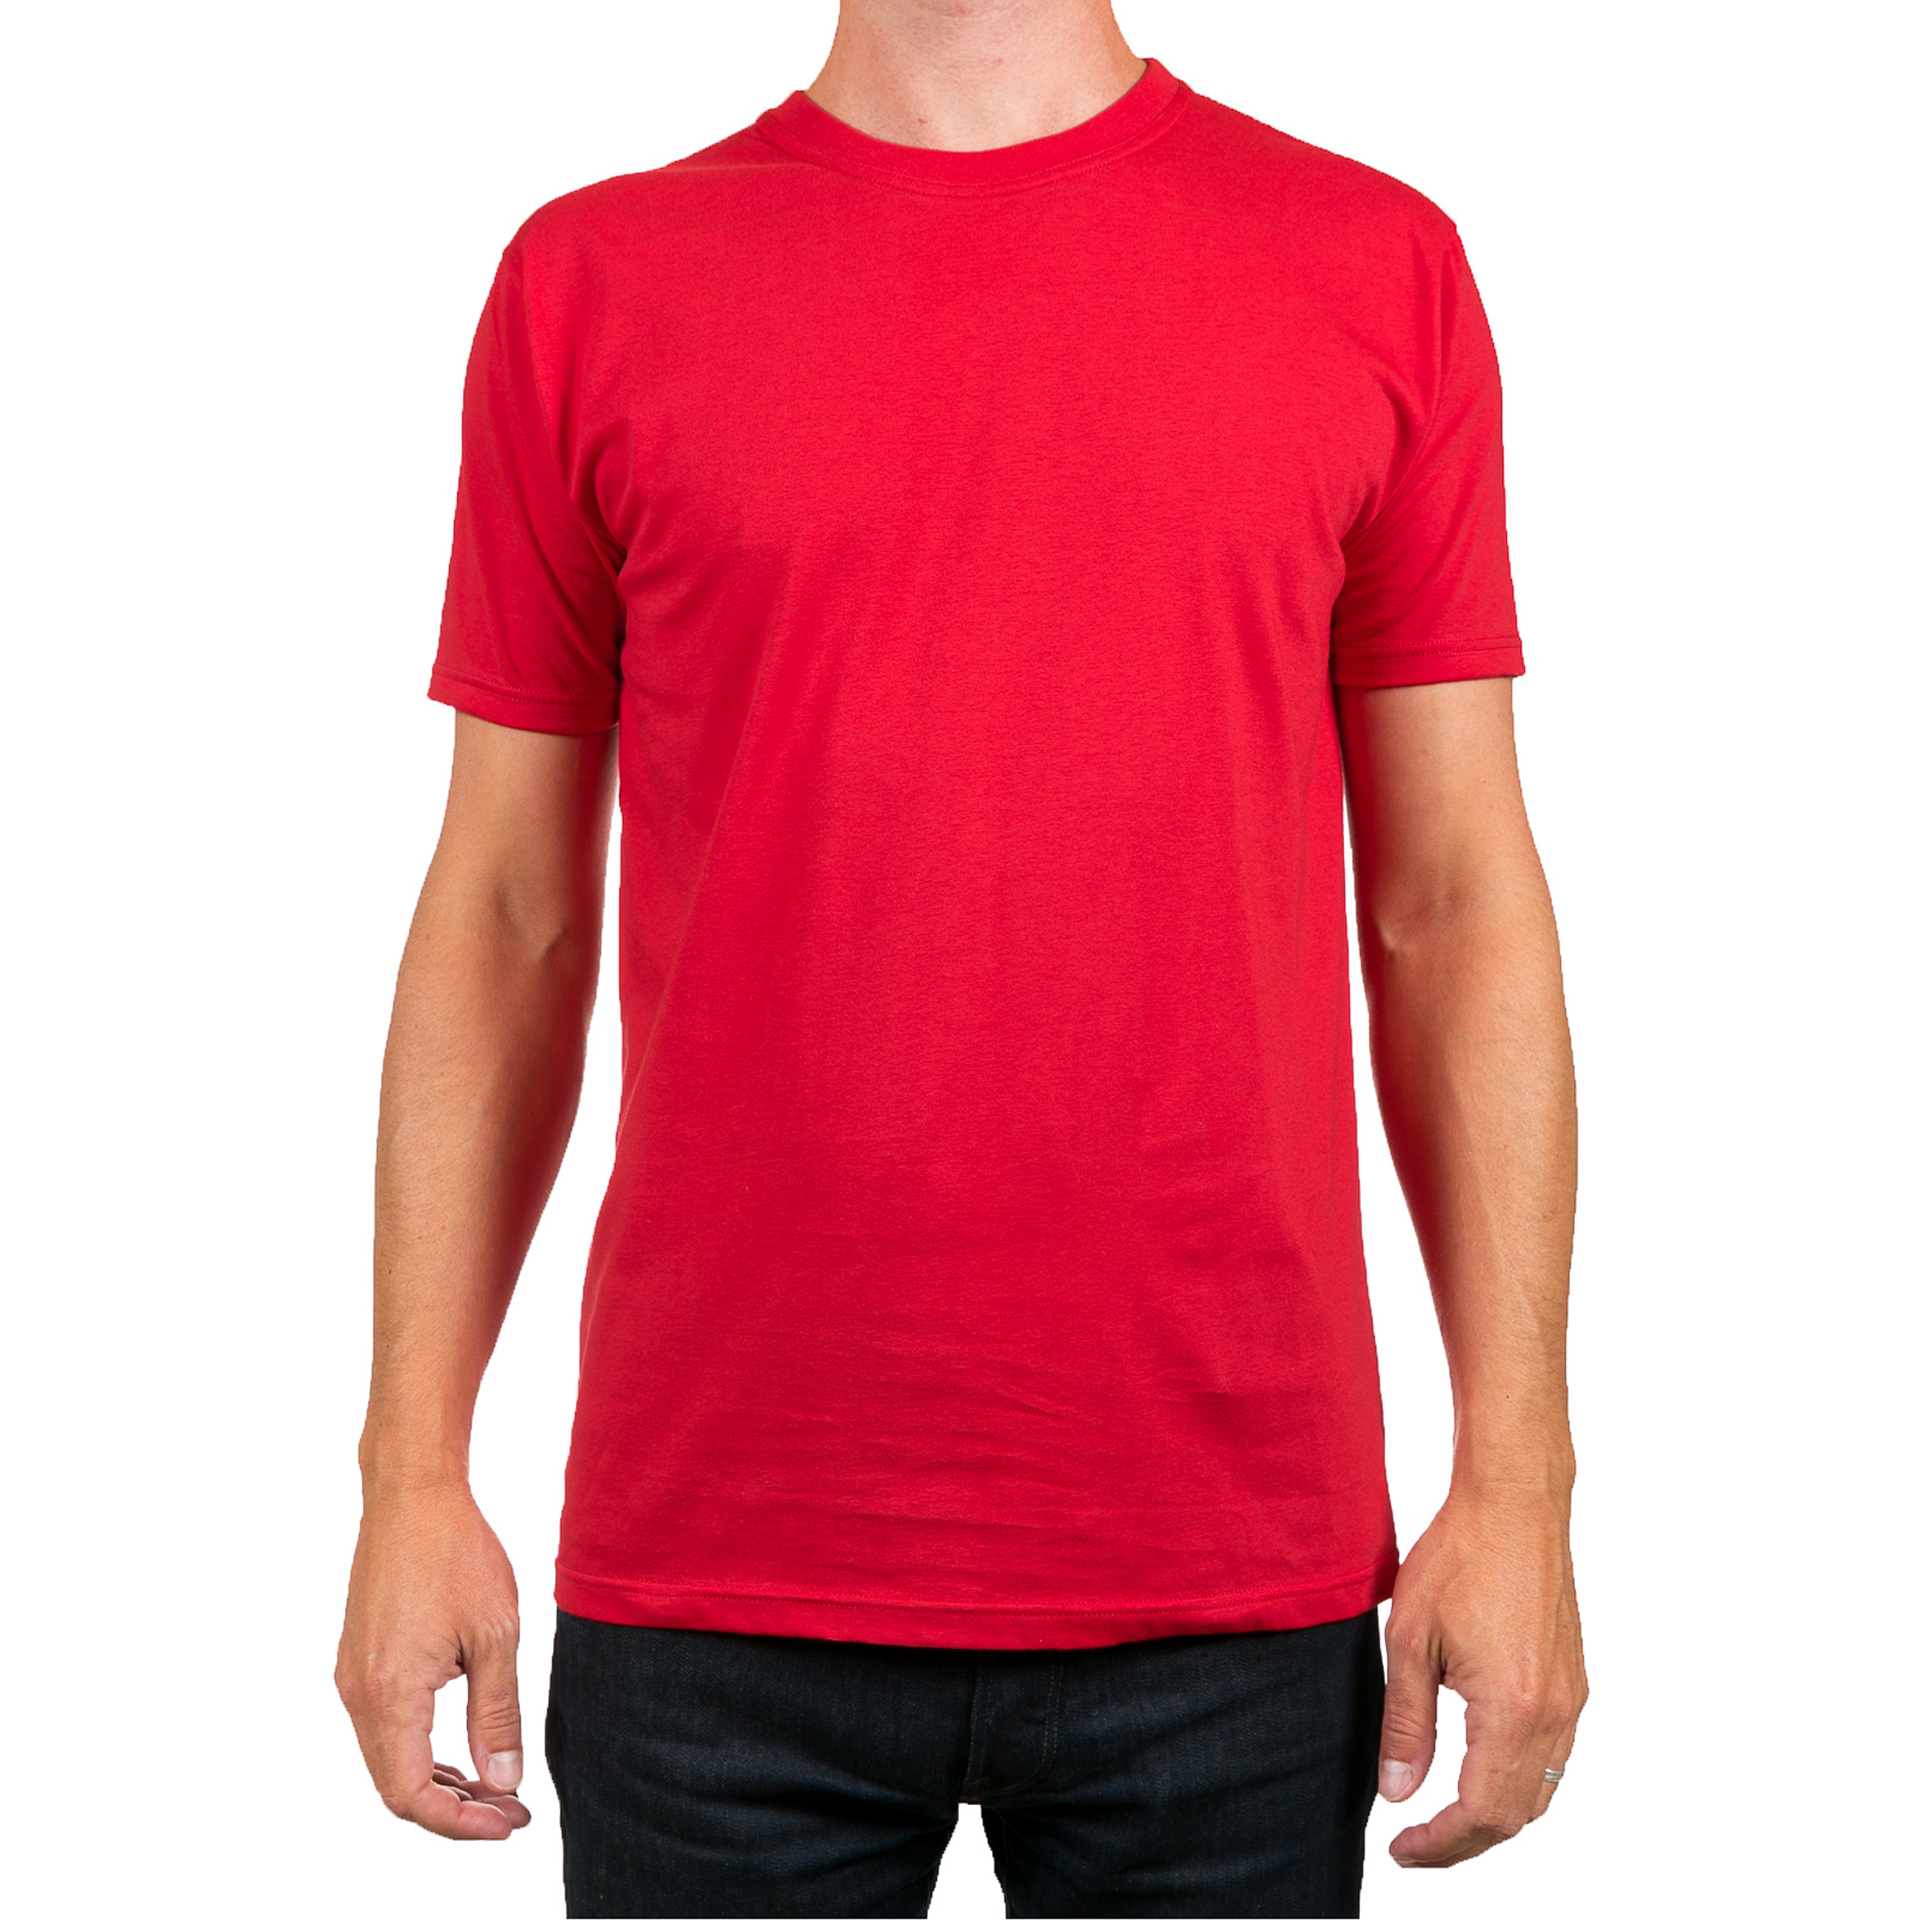 Мужчина в красной футболке